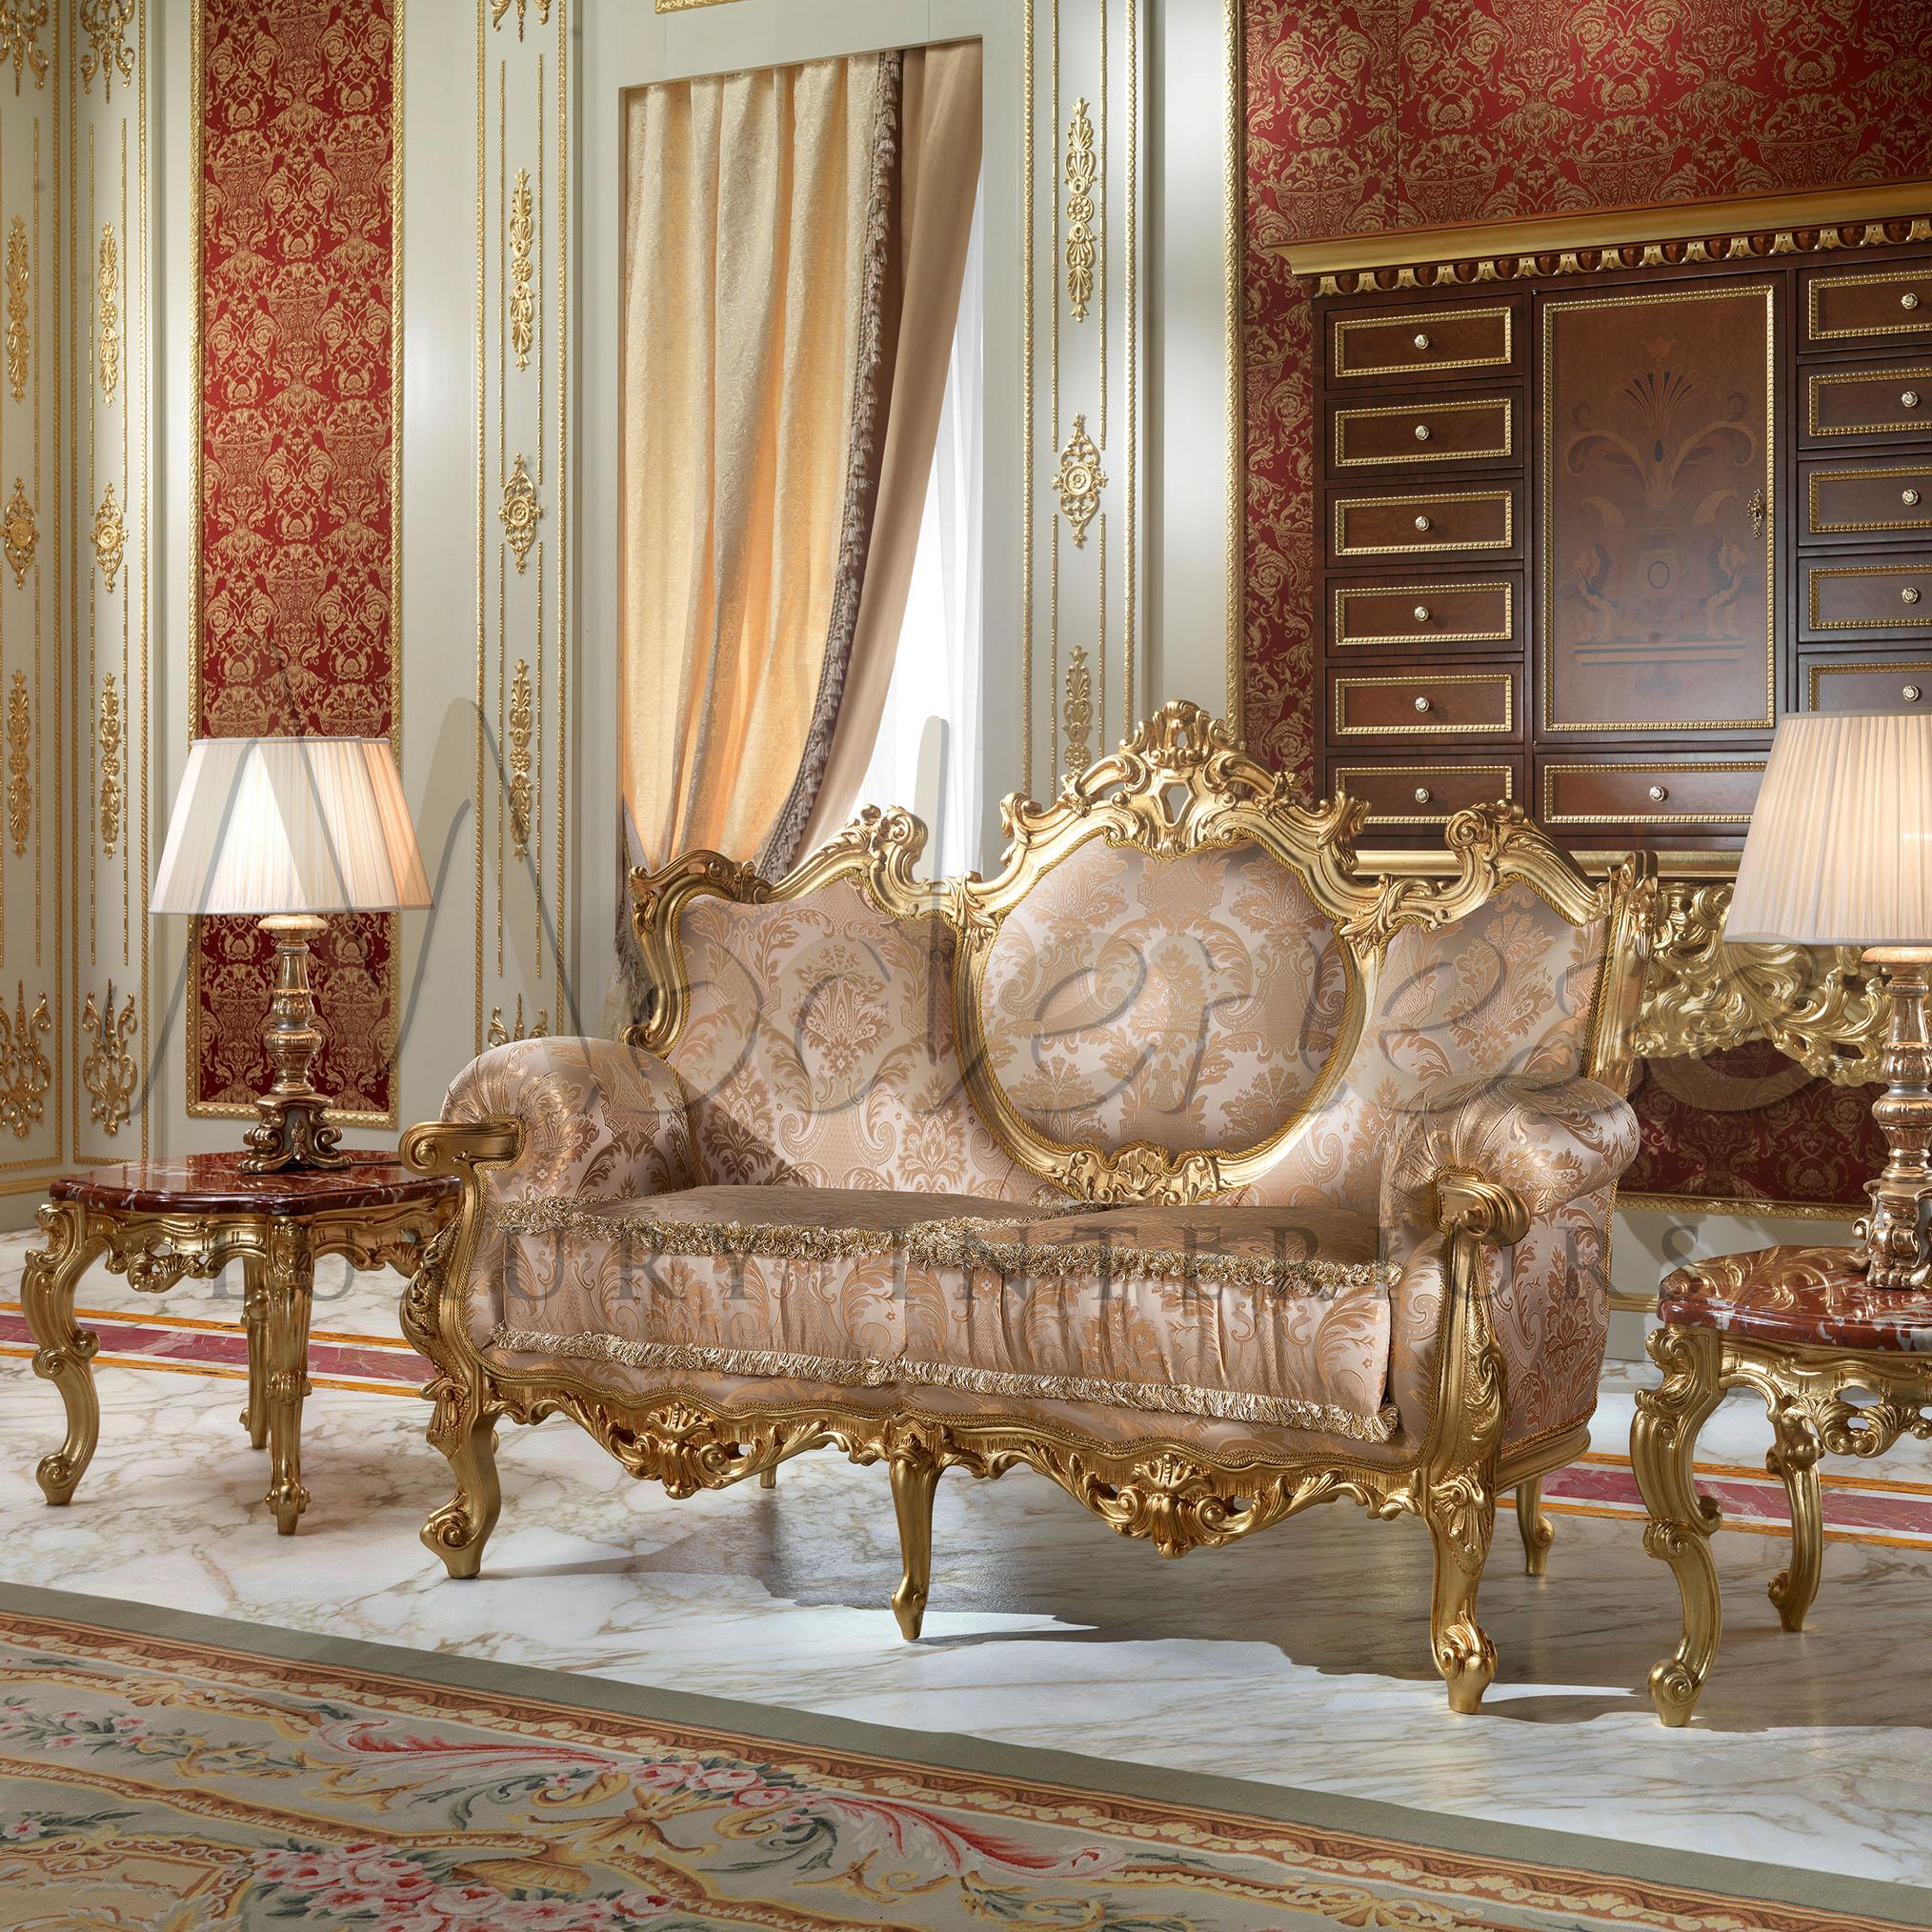 Das von Modenese Luxury Interiors spezialisierte Design aus dem 18. Jahrhundert greift die Dramatik der Louis XV-Ära auf. Dieses Zweisitzer-Sofa im klassischen Stil ist ebenso glamourös wie sein dreisitziges Geschwisterchen. Der vergoldete Rahmen,